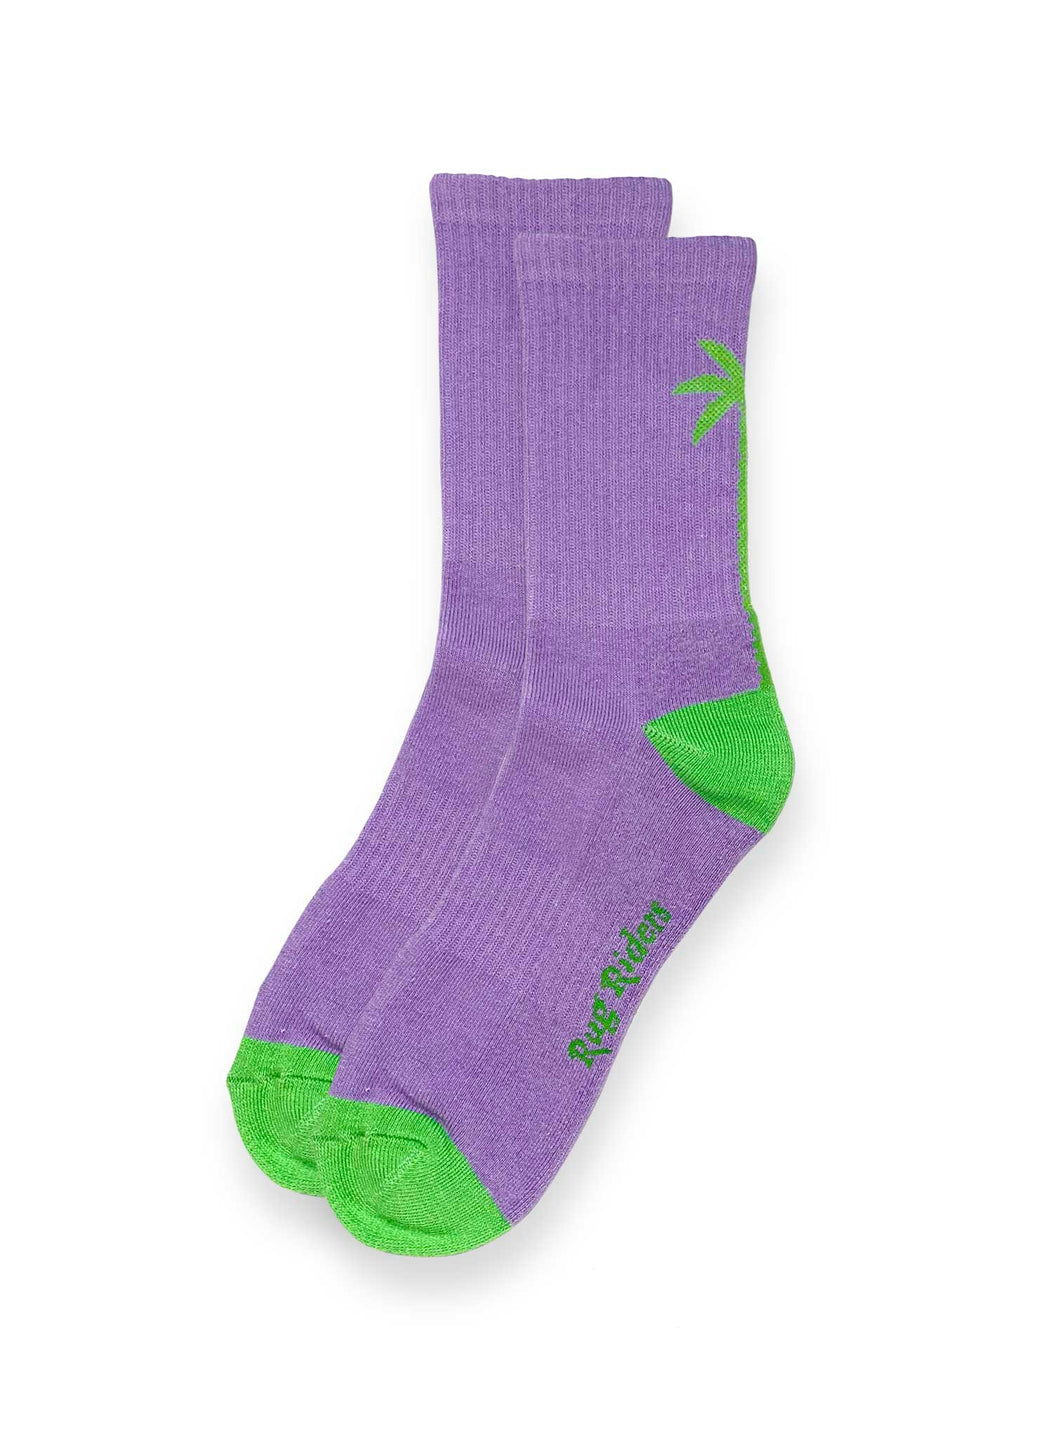 RugRiders Palm Tree Socks – Purple